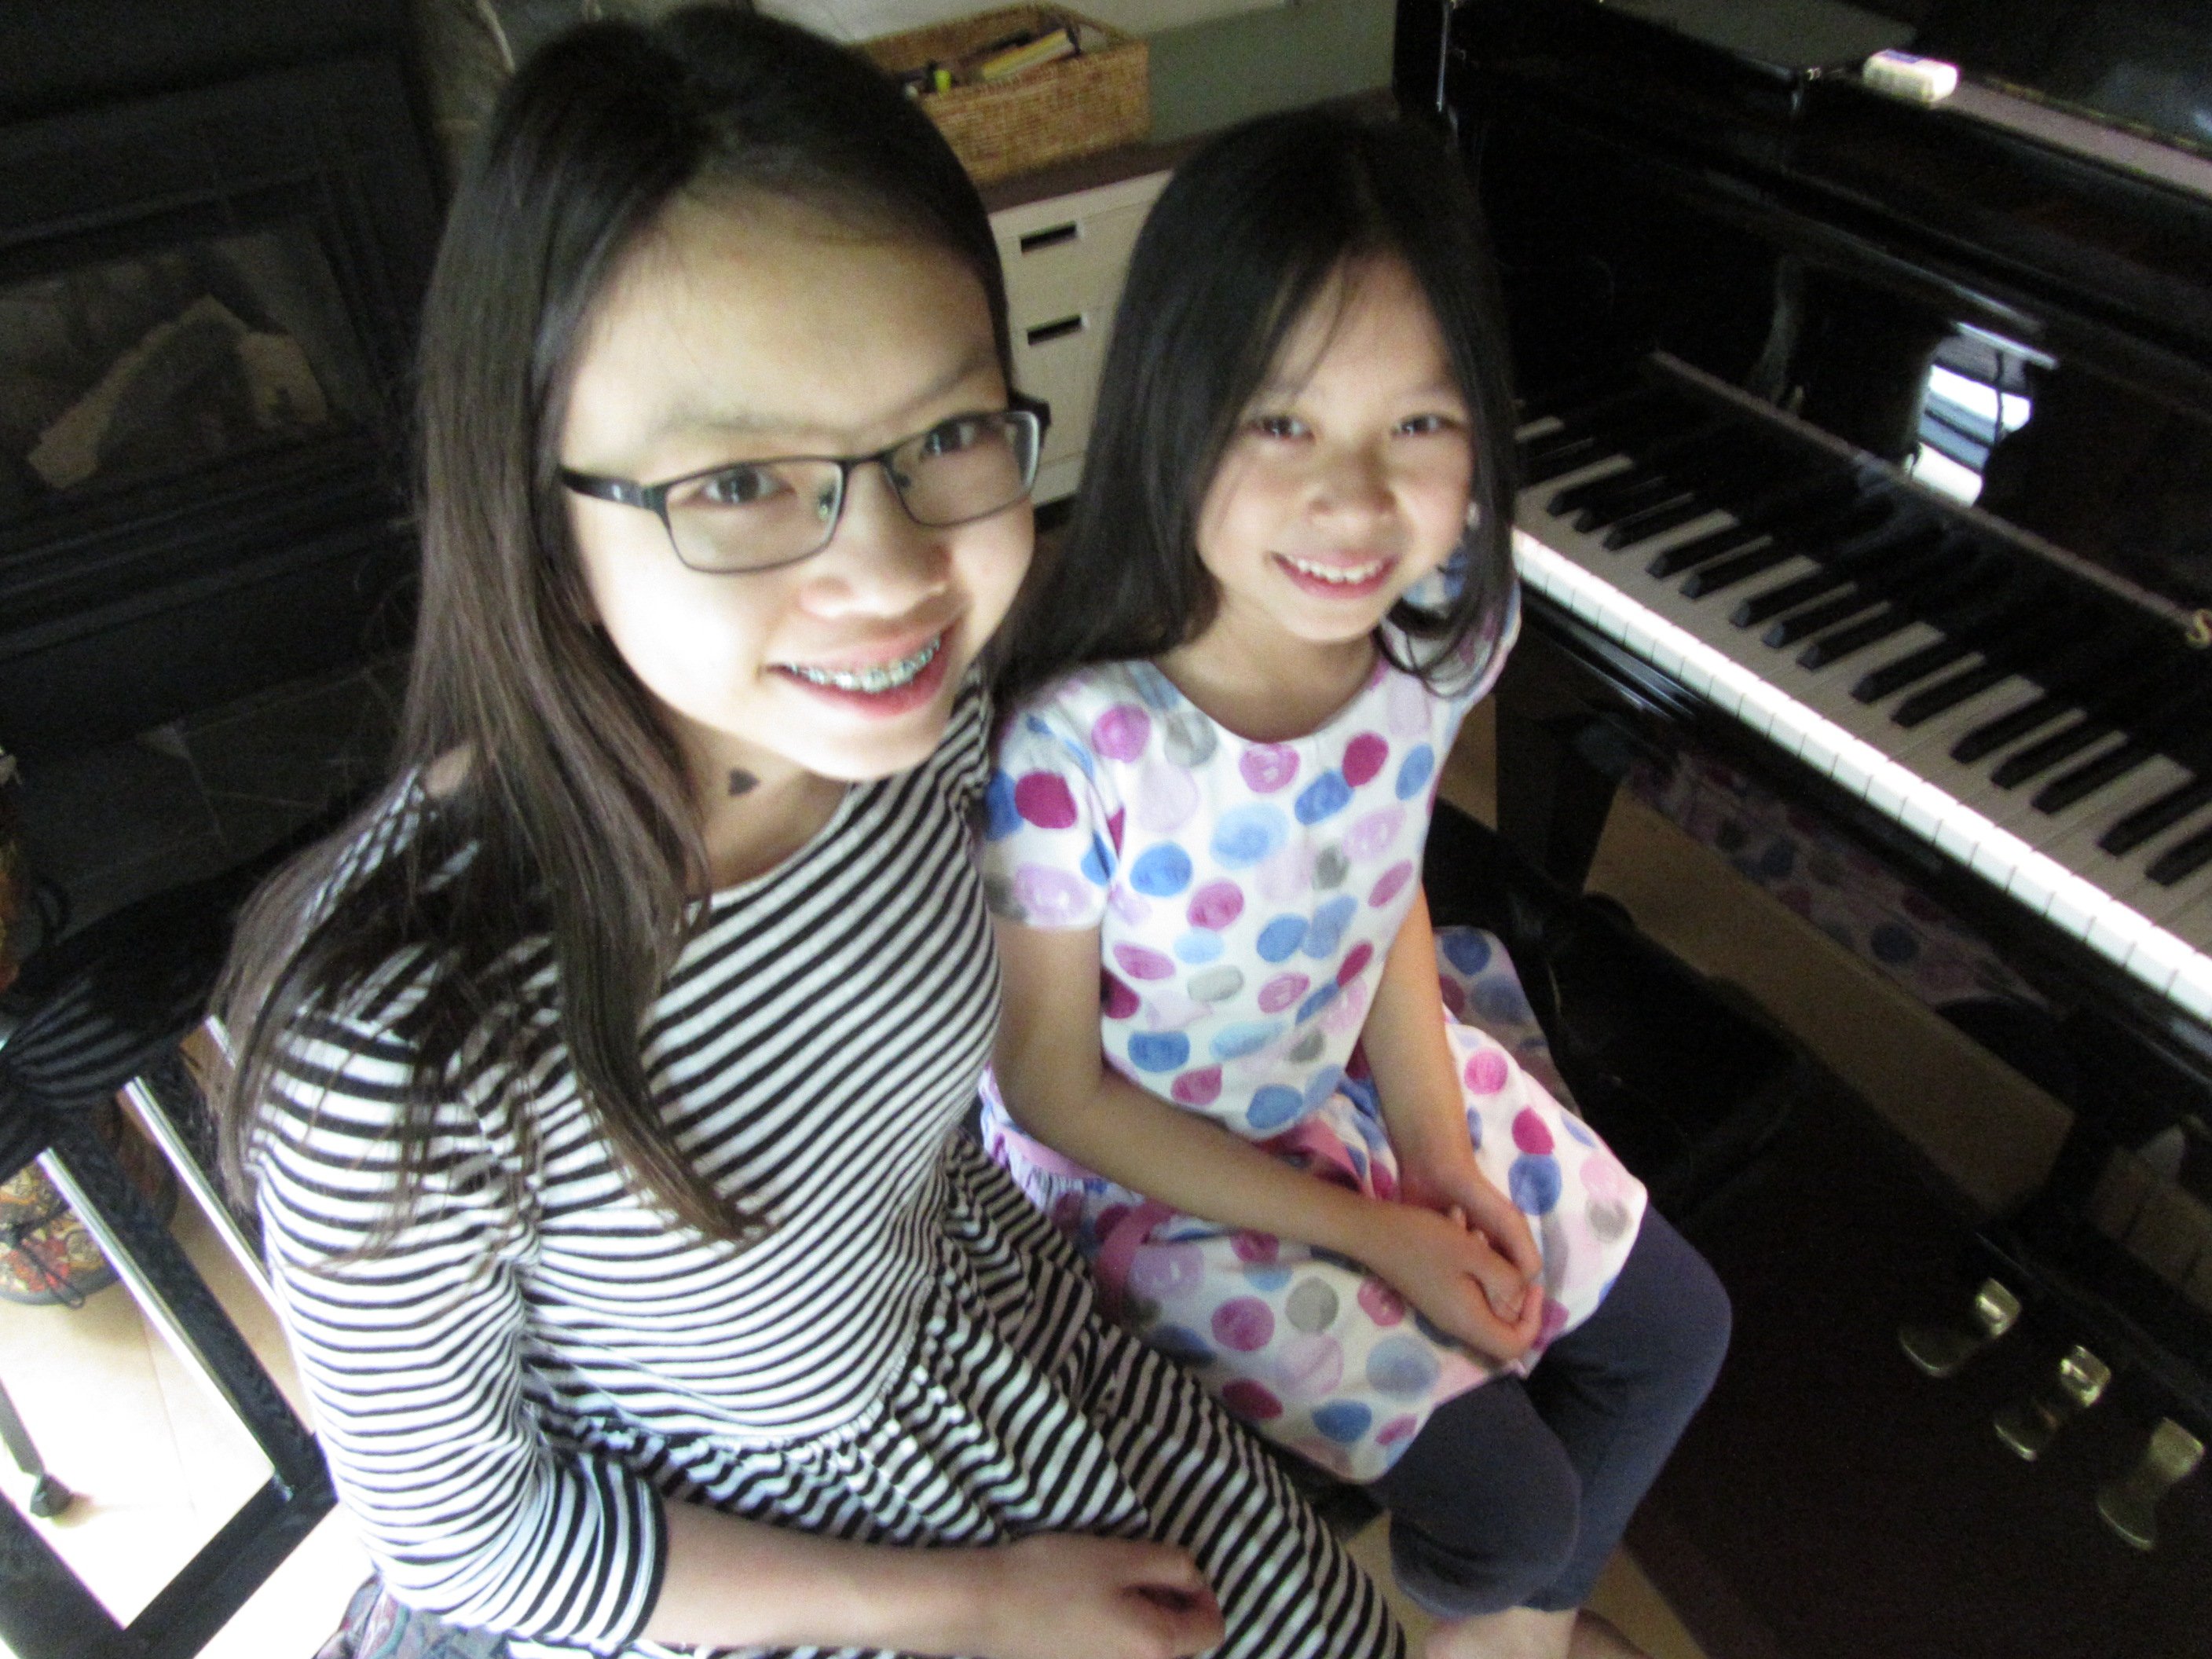 Piano students May and Kim - 2